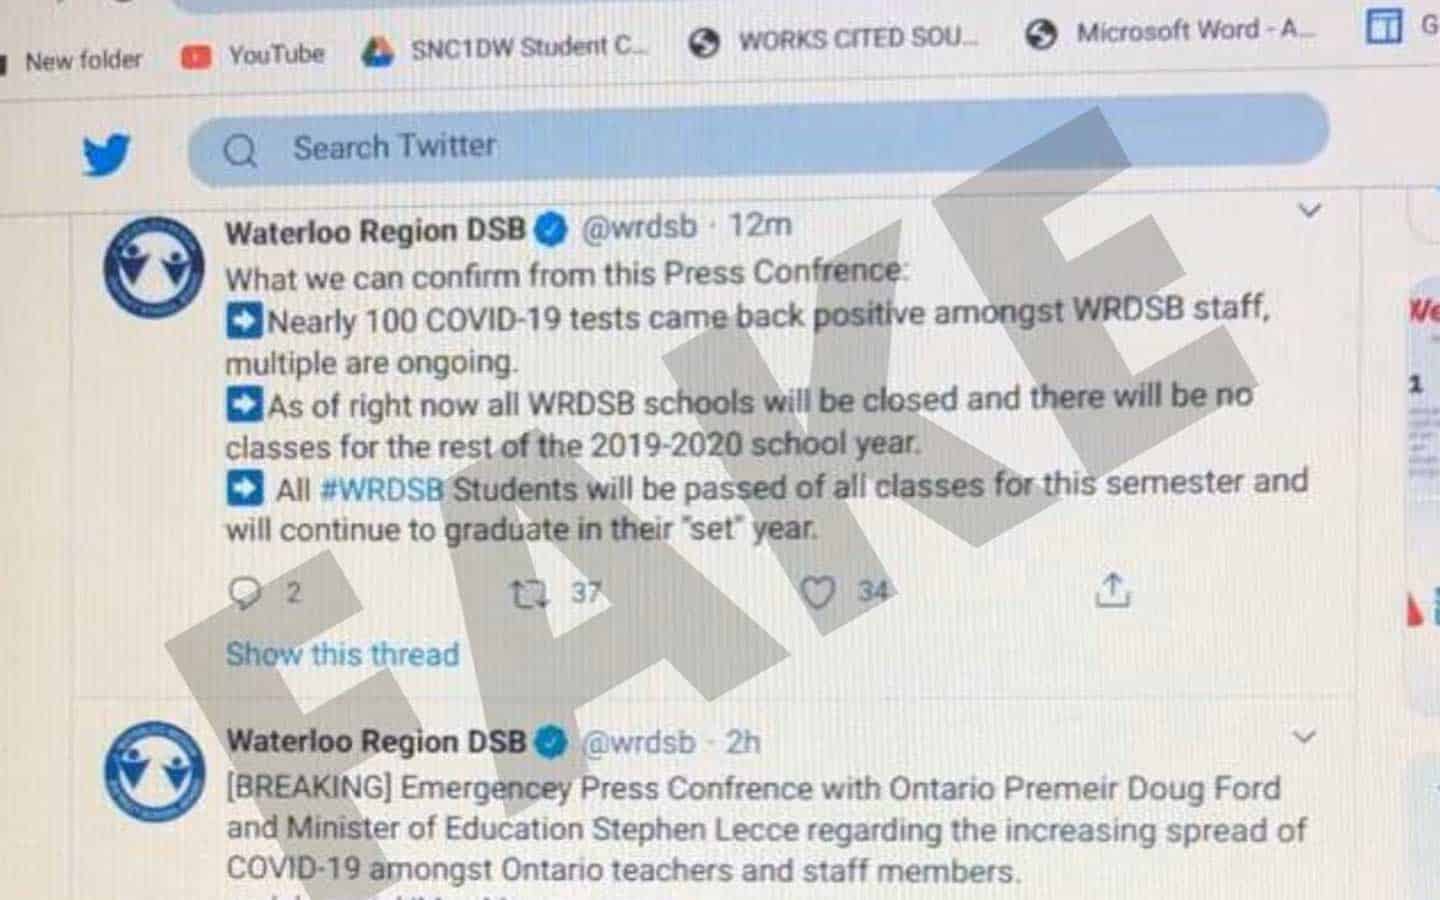 April Fools prank hits school board social media